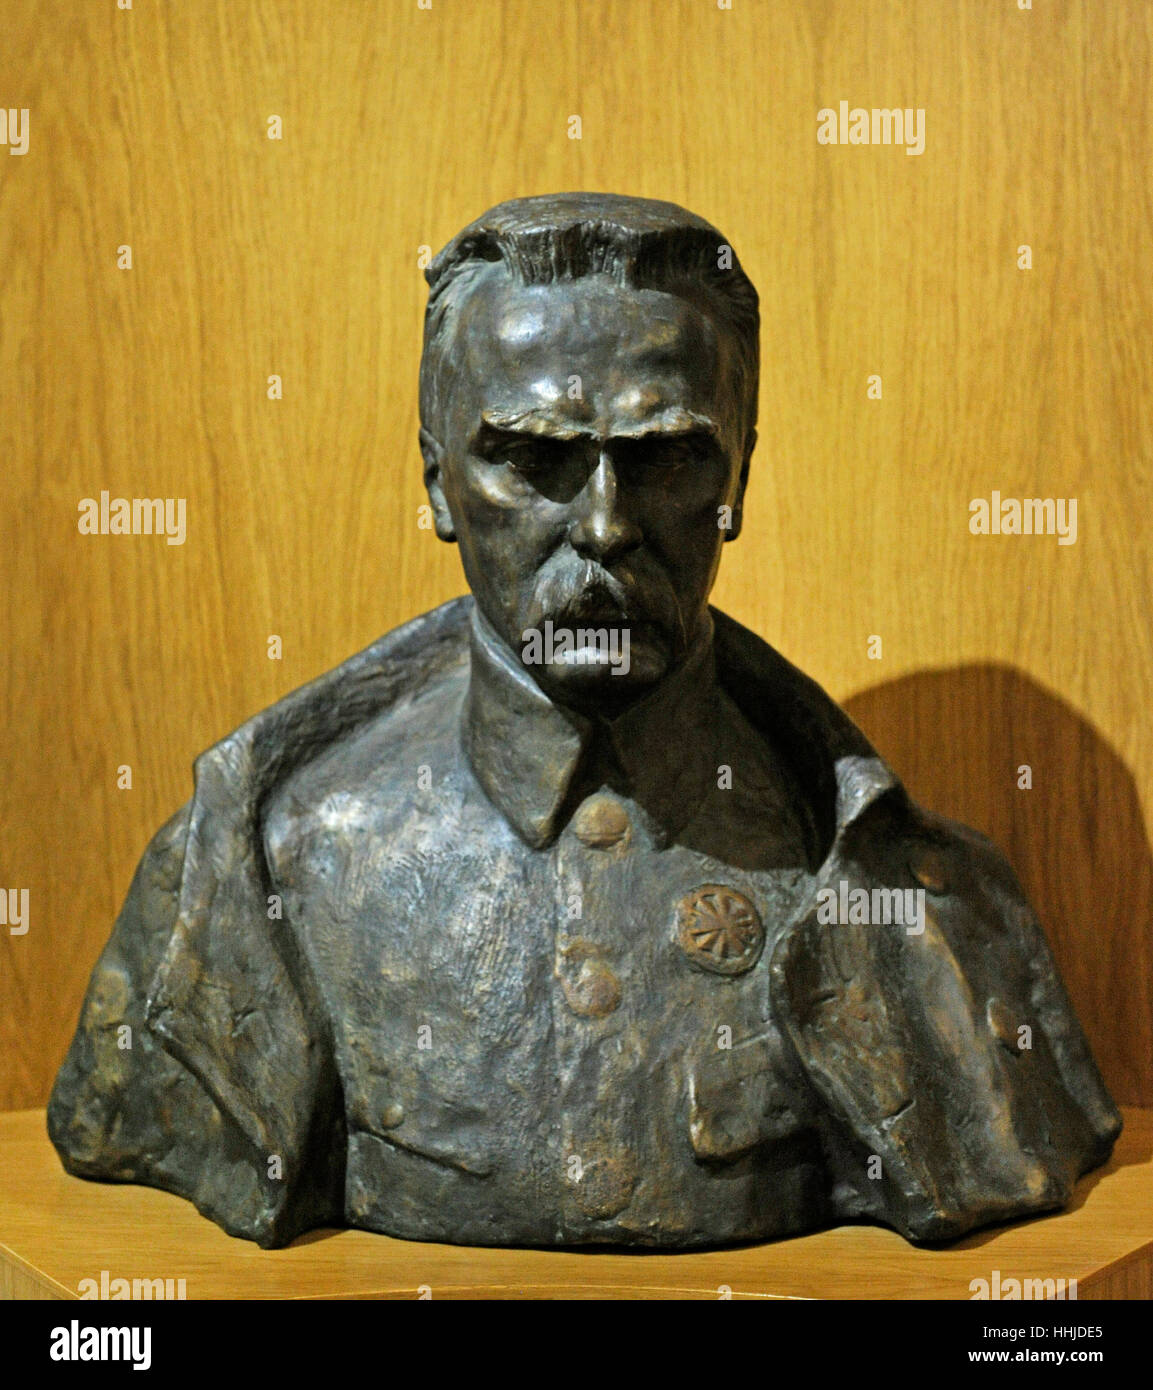 Jozef Pilzudski (1867-1935). Estadista polaco. El Jefe de Estado de la Segunda República de Polonia. Busto. Museo Histórico. Gdansk. Polonia Foto de stock